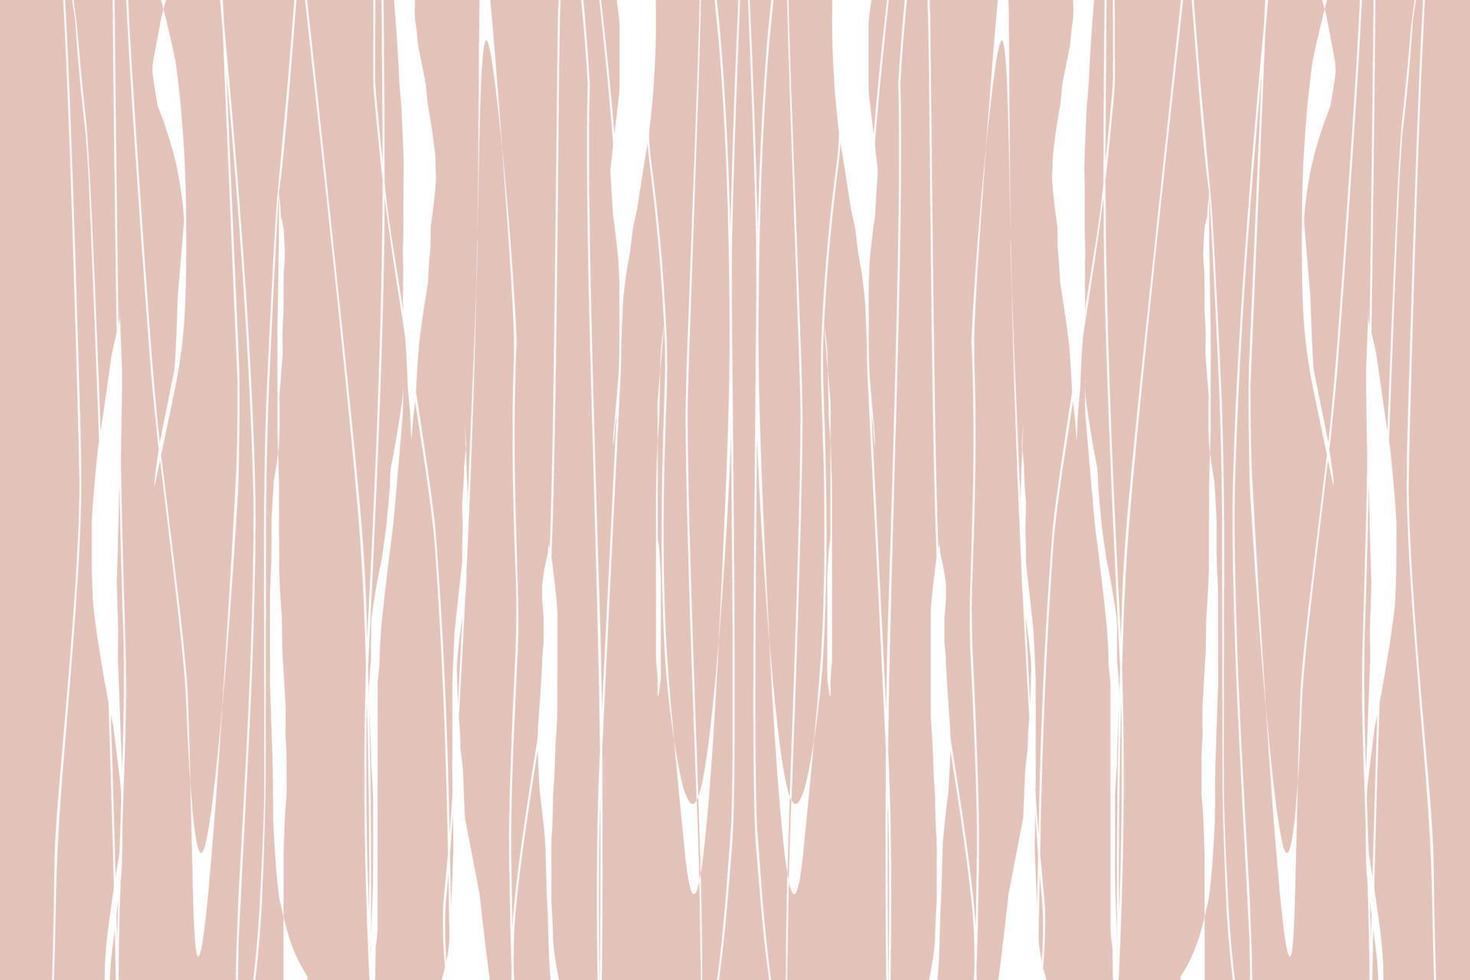 modelli eleganti con forme astratte organiche e linea in colori nude. sfondo pastello in stile minimalista. illustrazione vettoriale contemporanea